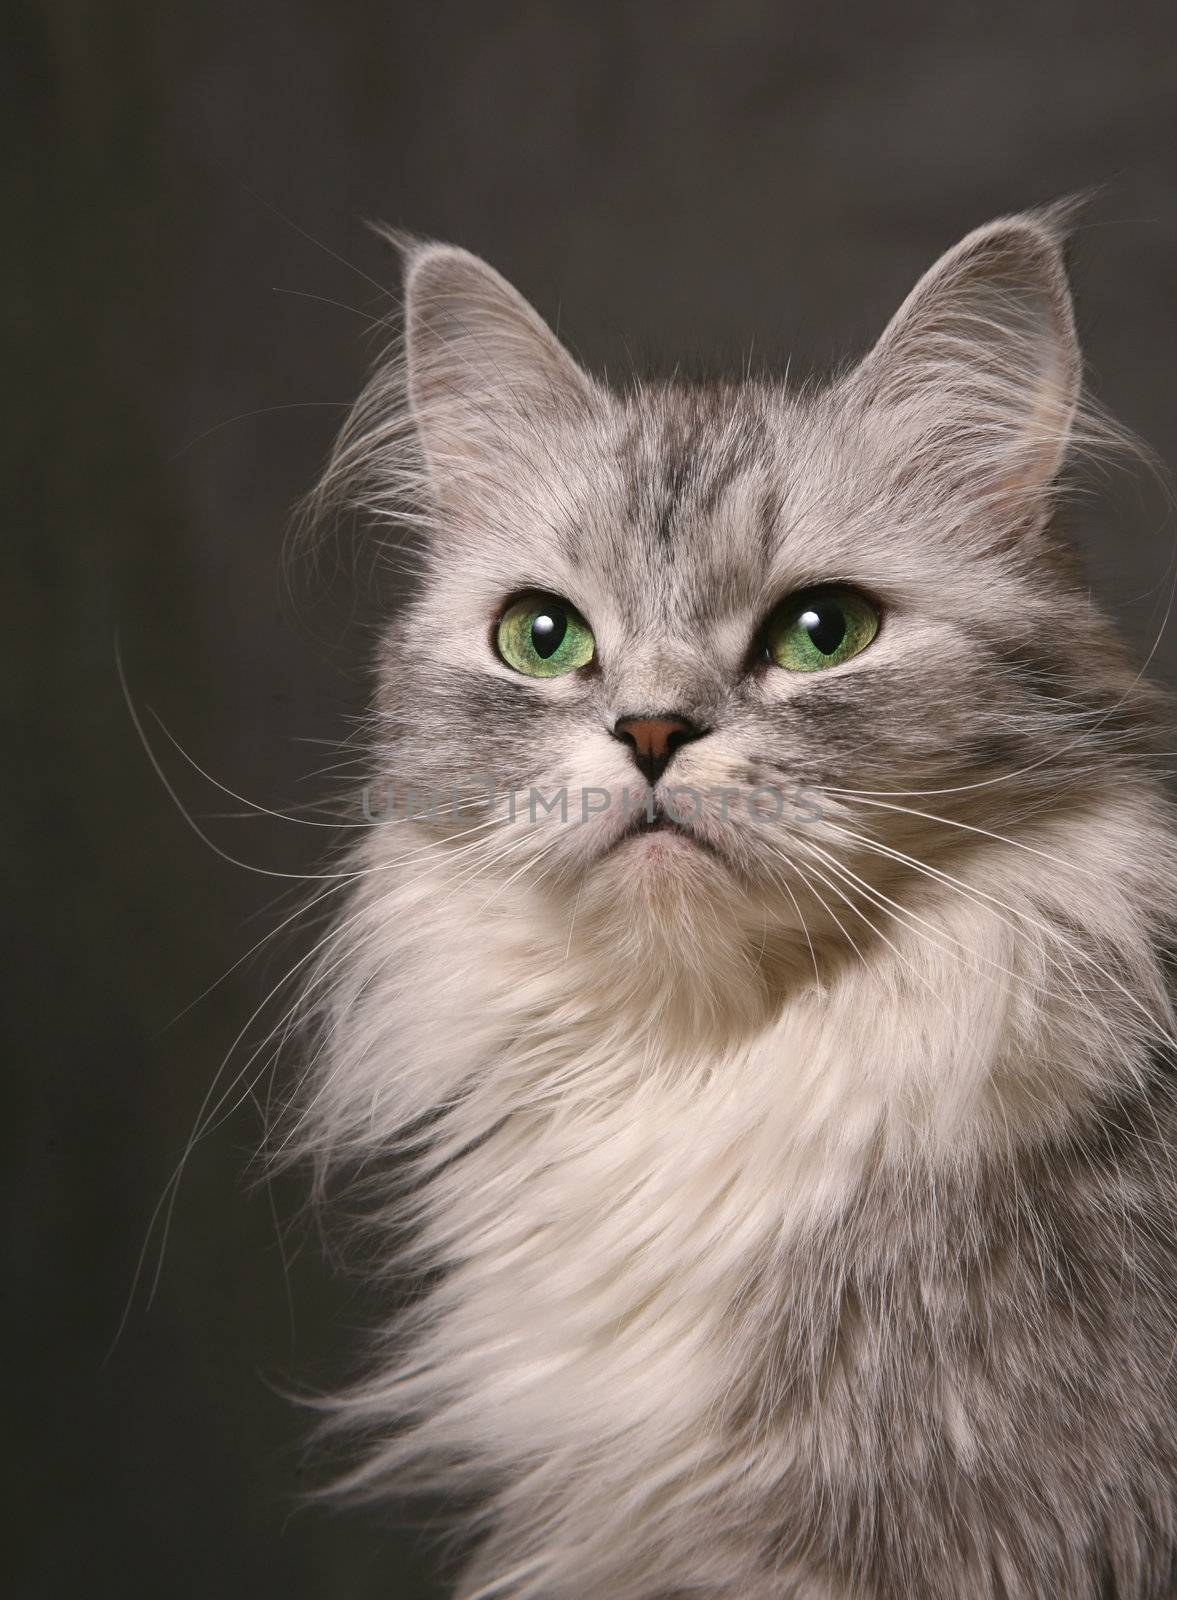 Portrait of a cat close-up in studio